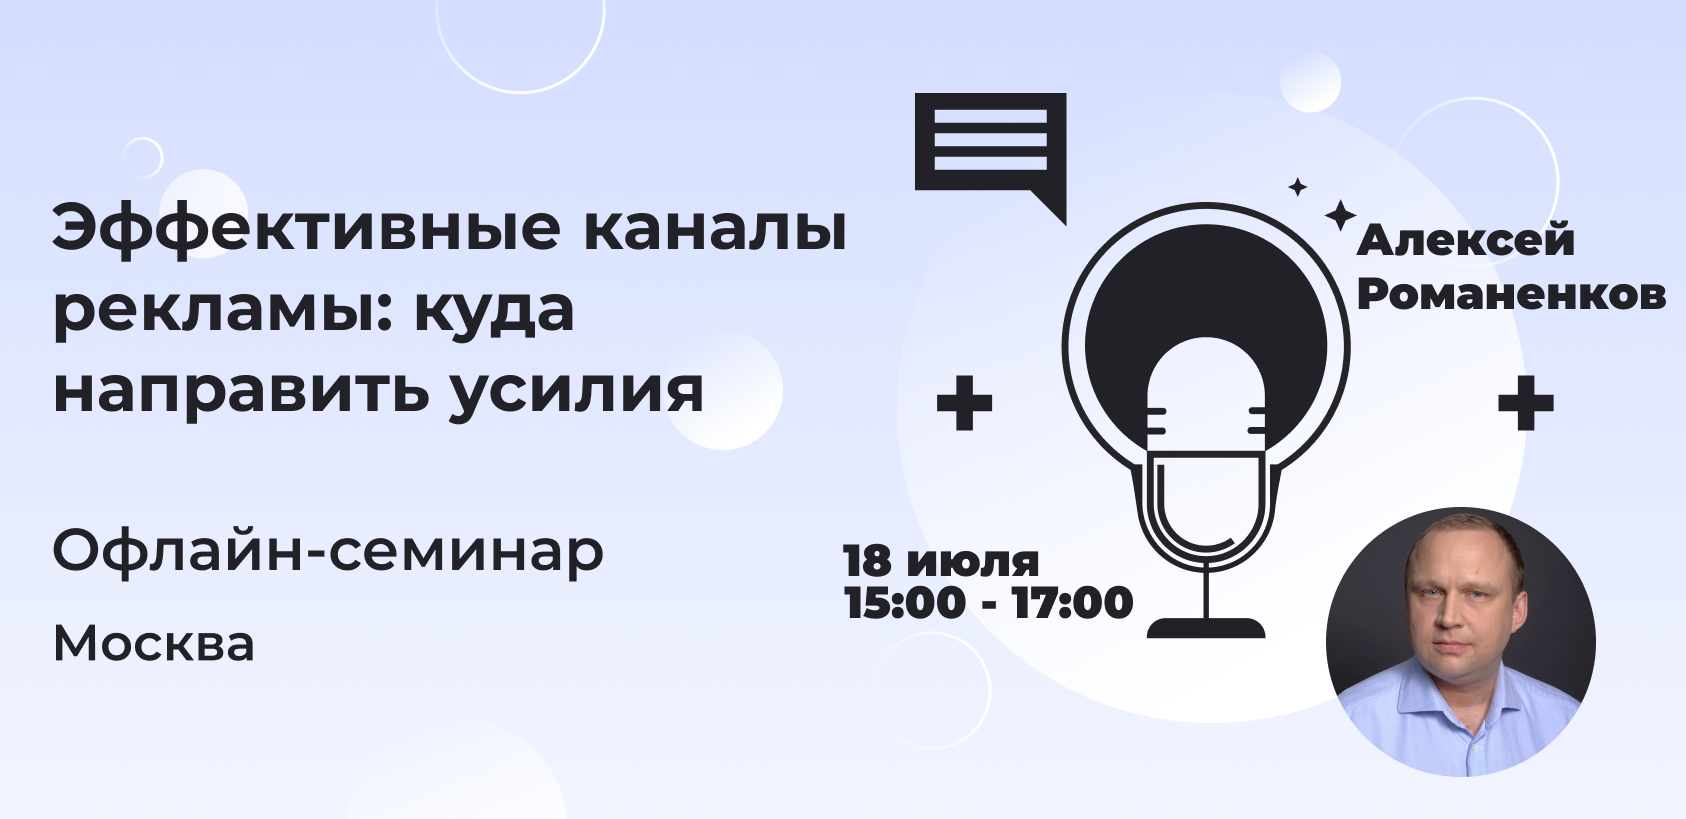 Офлайн-семинар Rookee в Москве: эффективные каналы рекламы